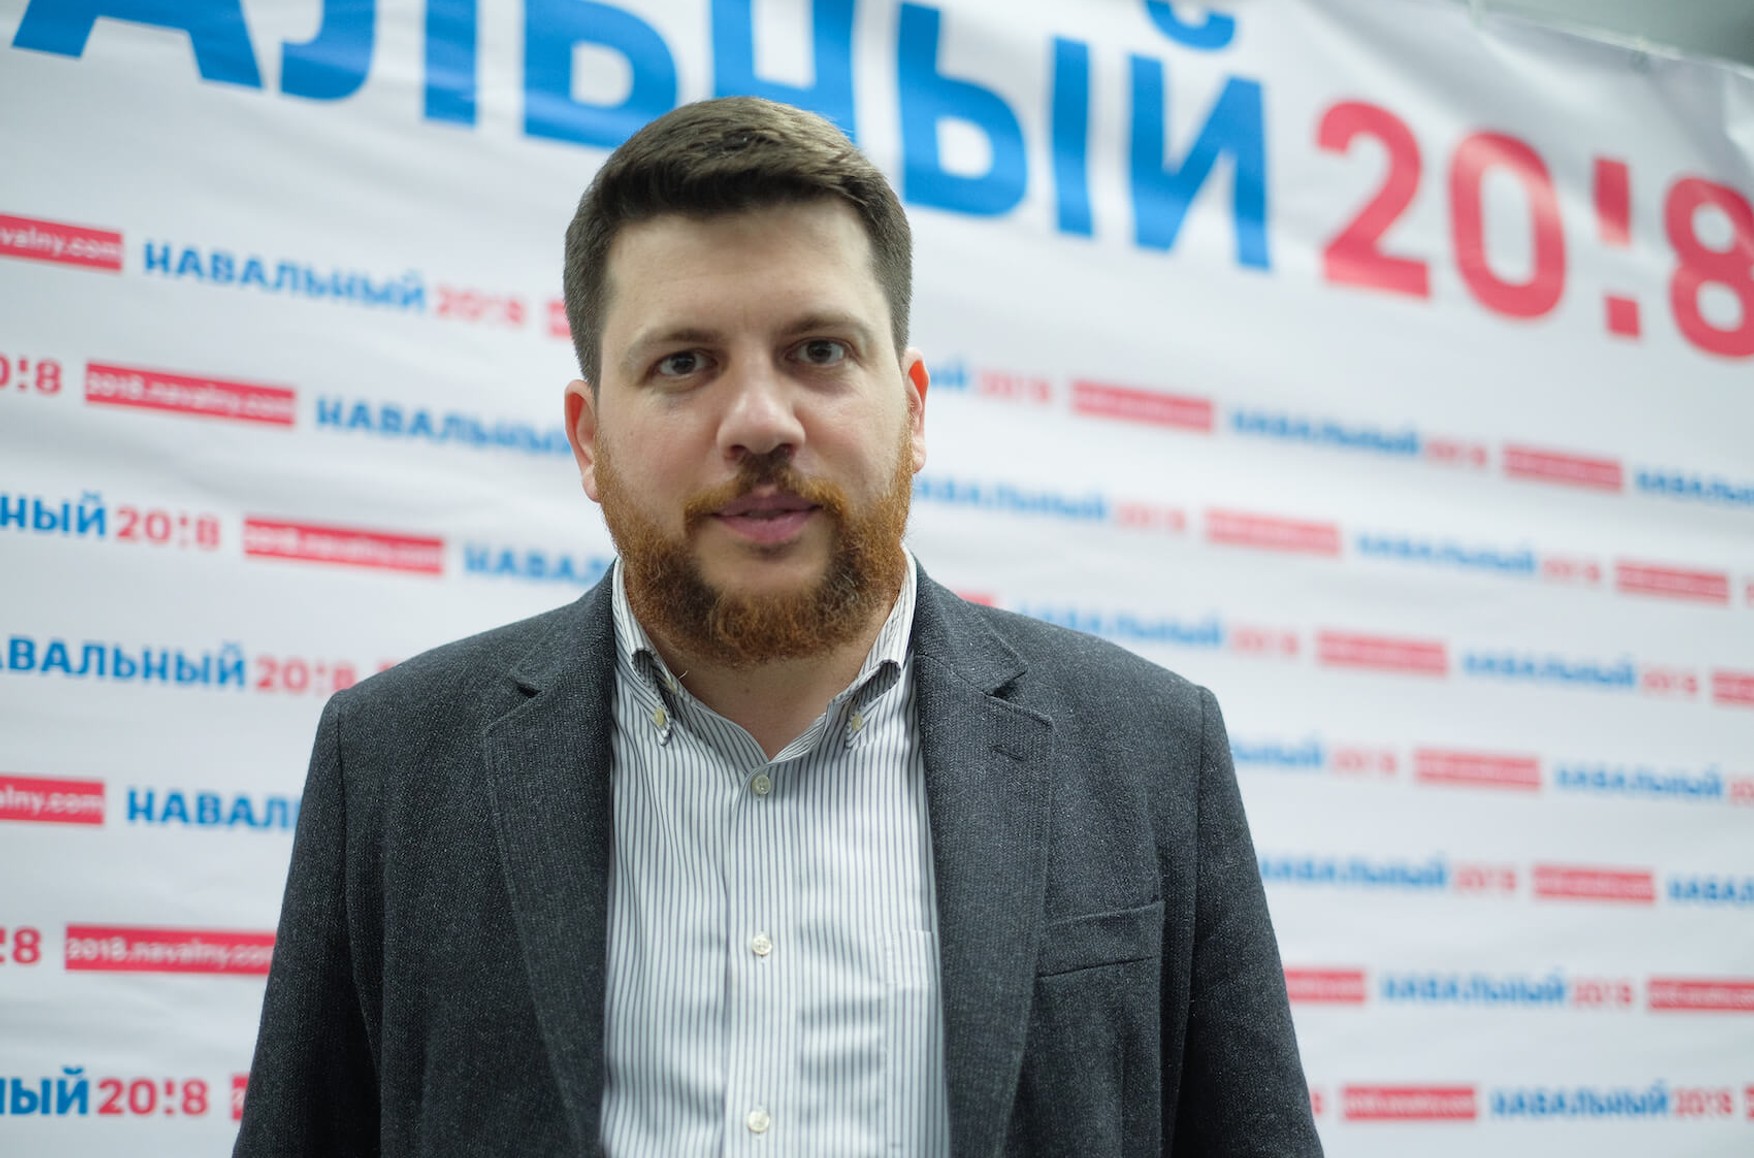 Леонід Волков повідомив, що відділ розслідувань команди Навального продовжить роботу і анонсував кілька нових великих проектів